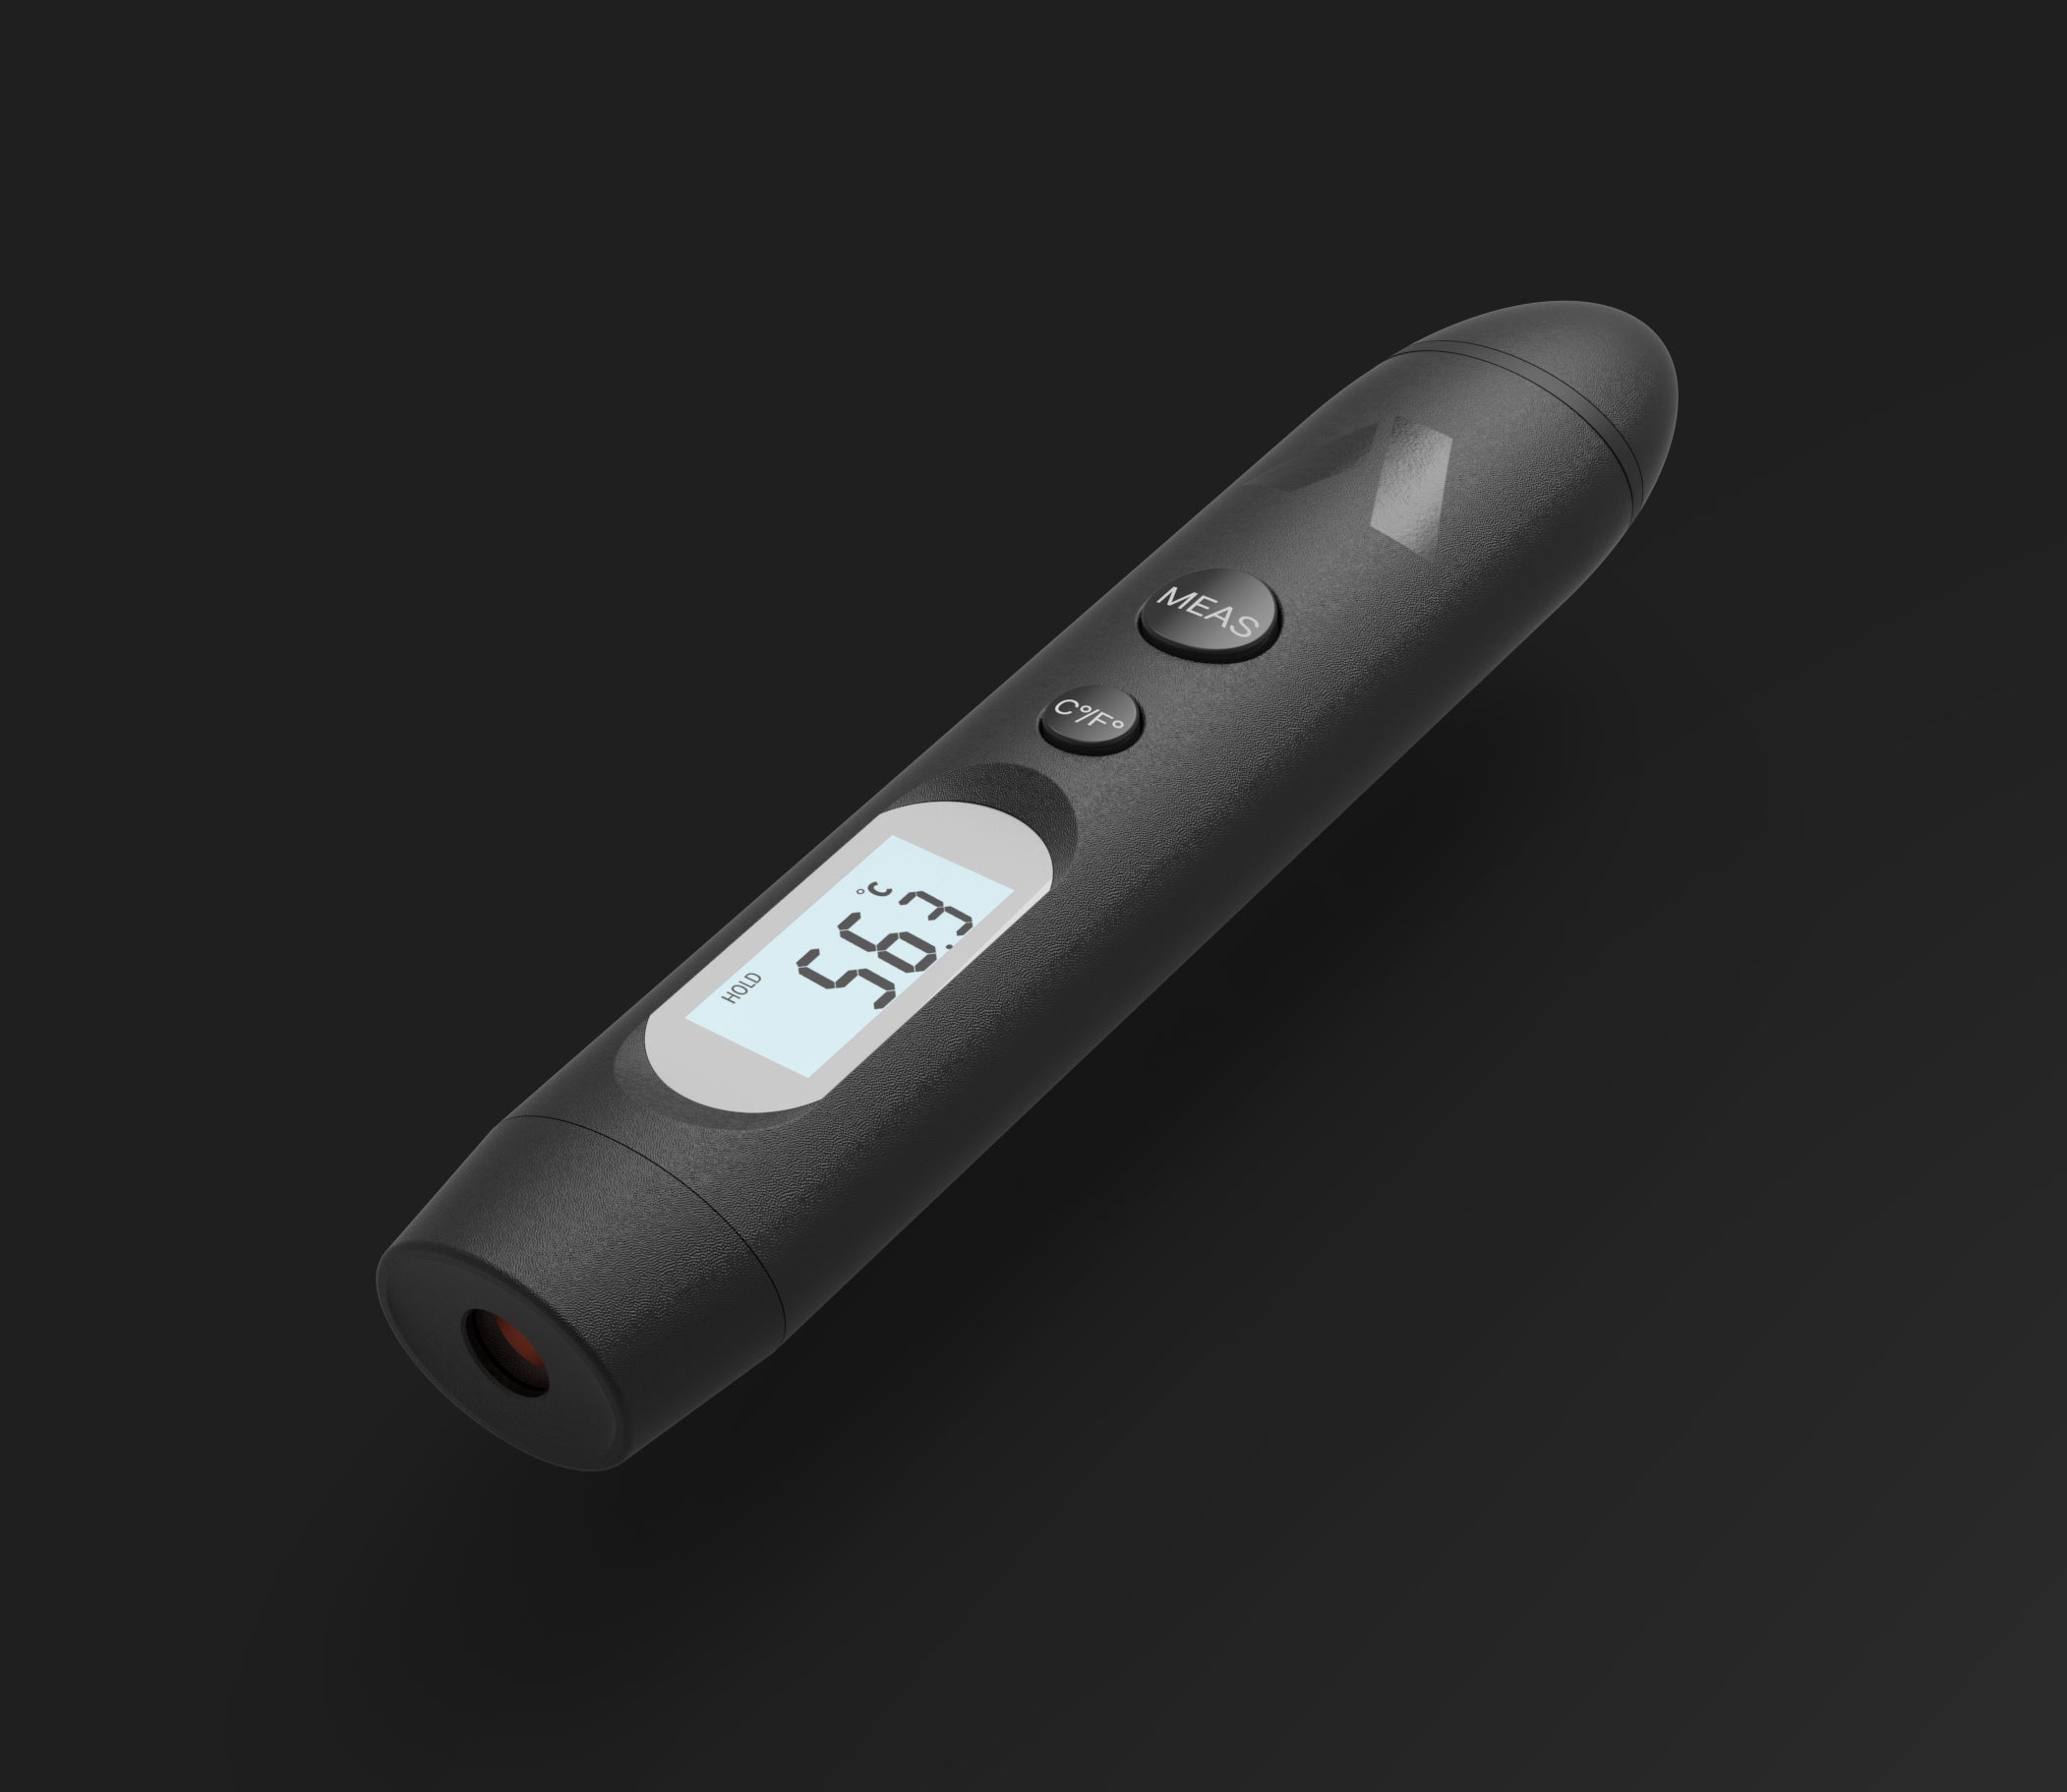 Primo Remote Wireless Thermometer